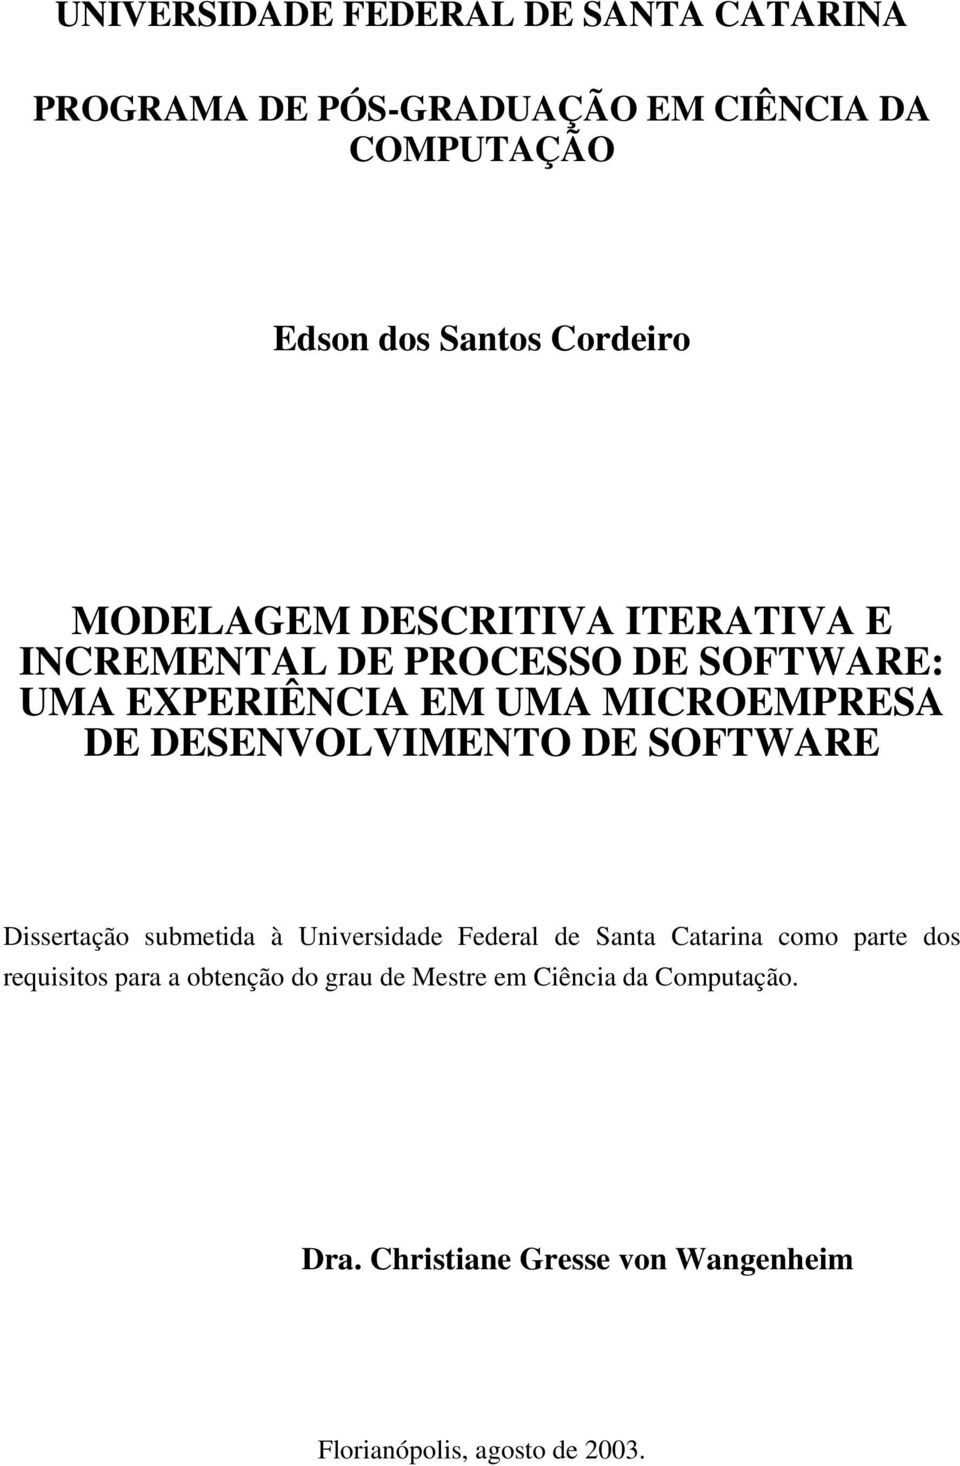 DESENVOLVIMENTO DE SOFTWARE Dissertação submetida à Universidade Federal de Santa Catarina como parte dos requisitos